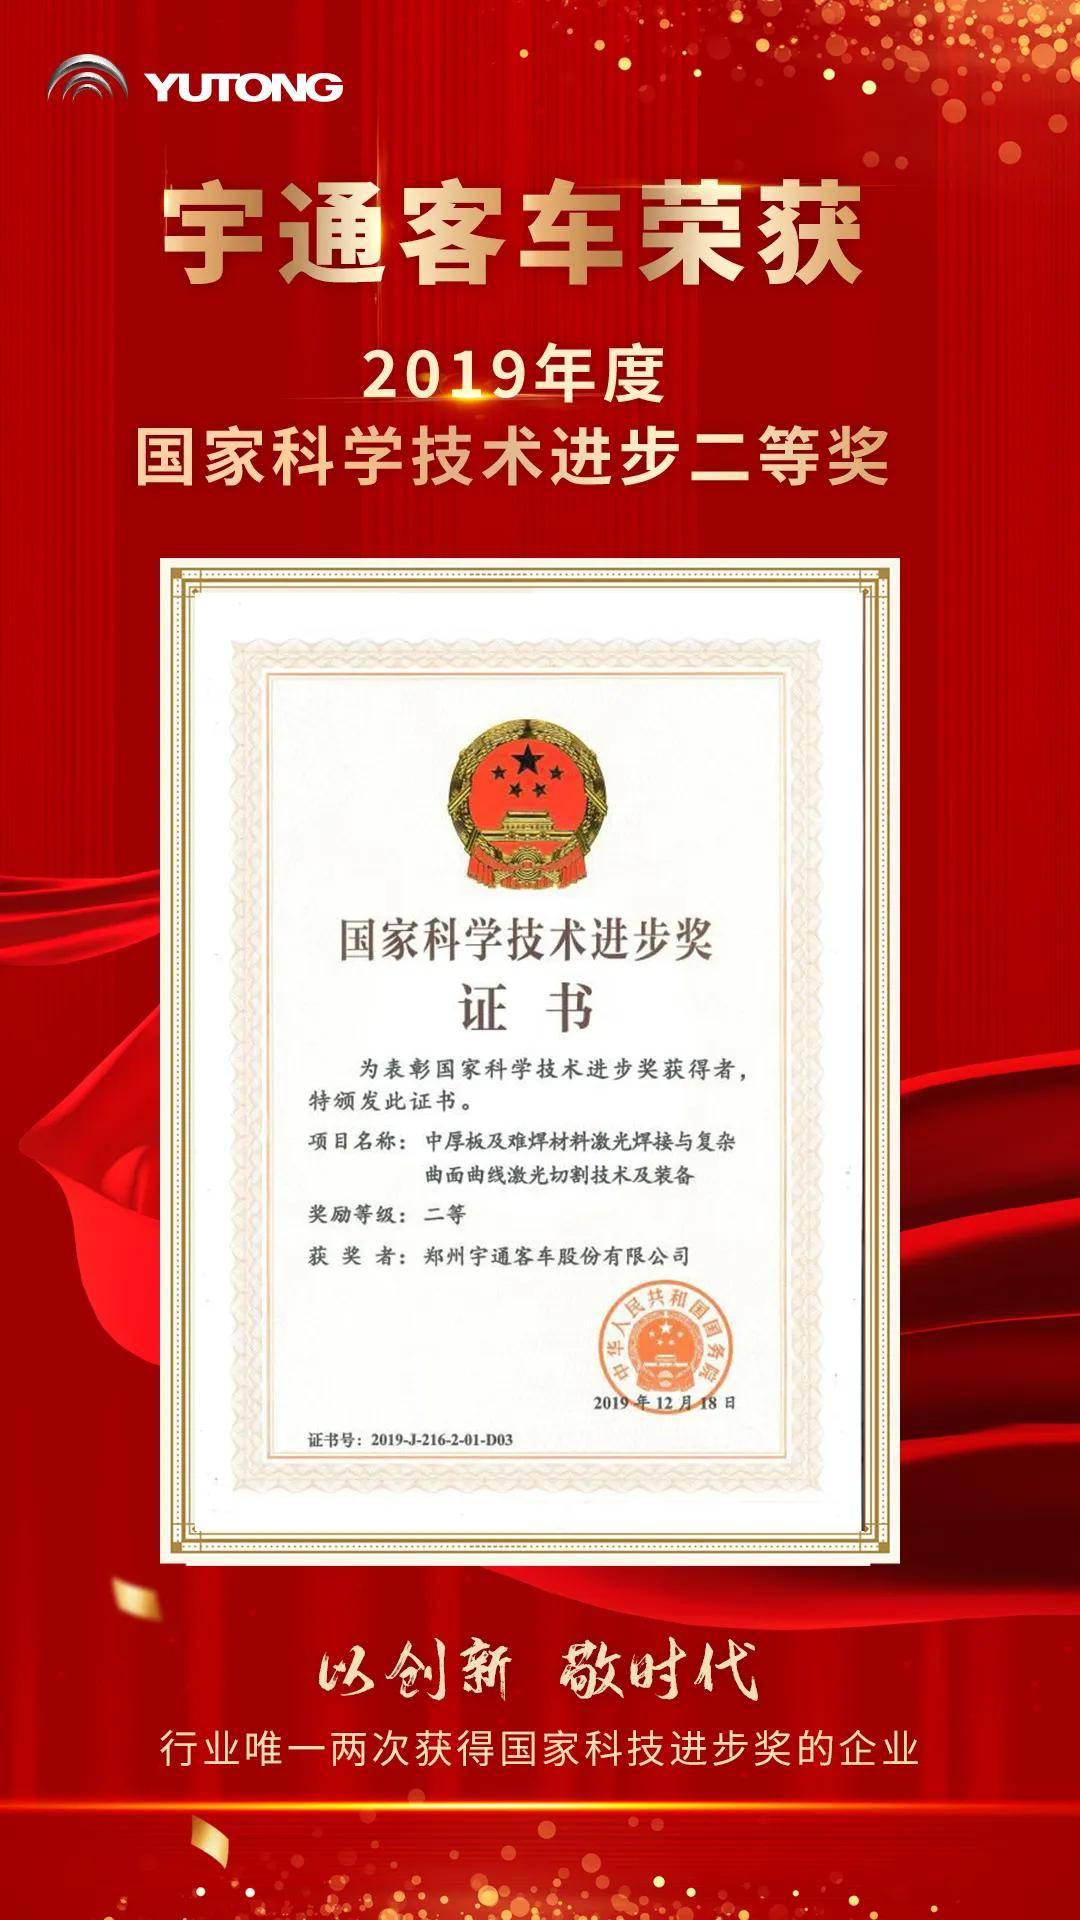 国务院颁发最高科技荣誉宇通再次荣获国家科技进步奖